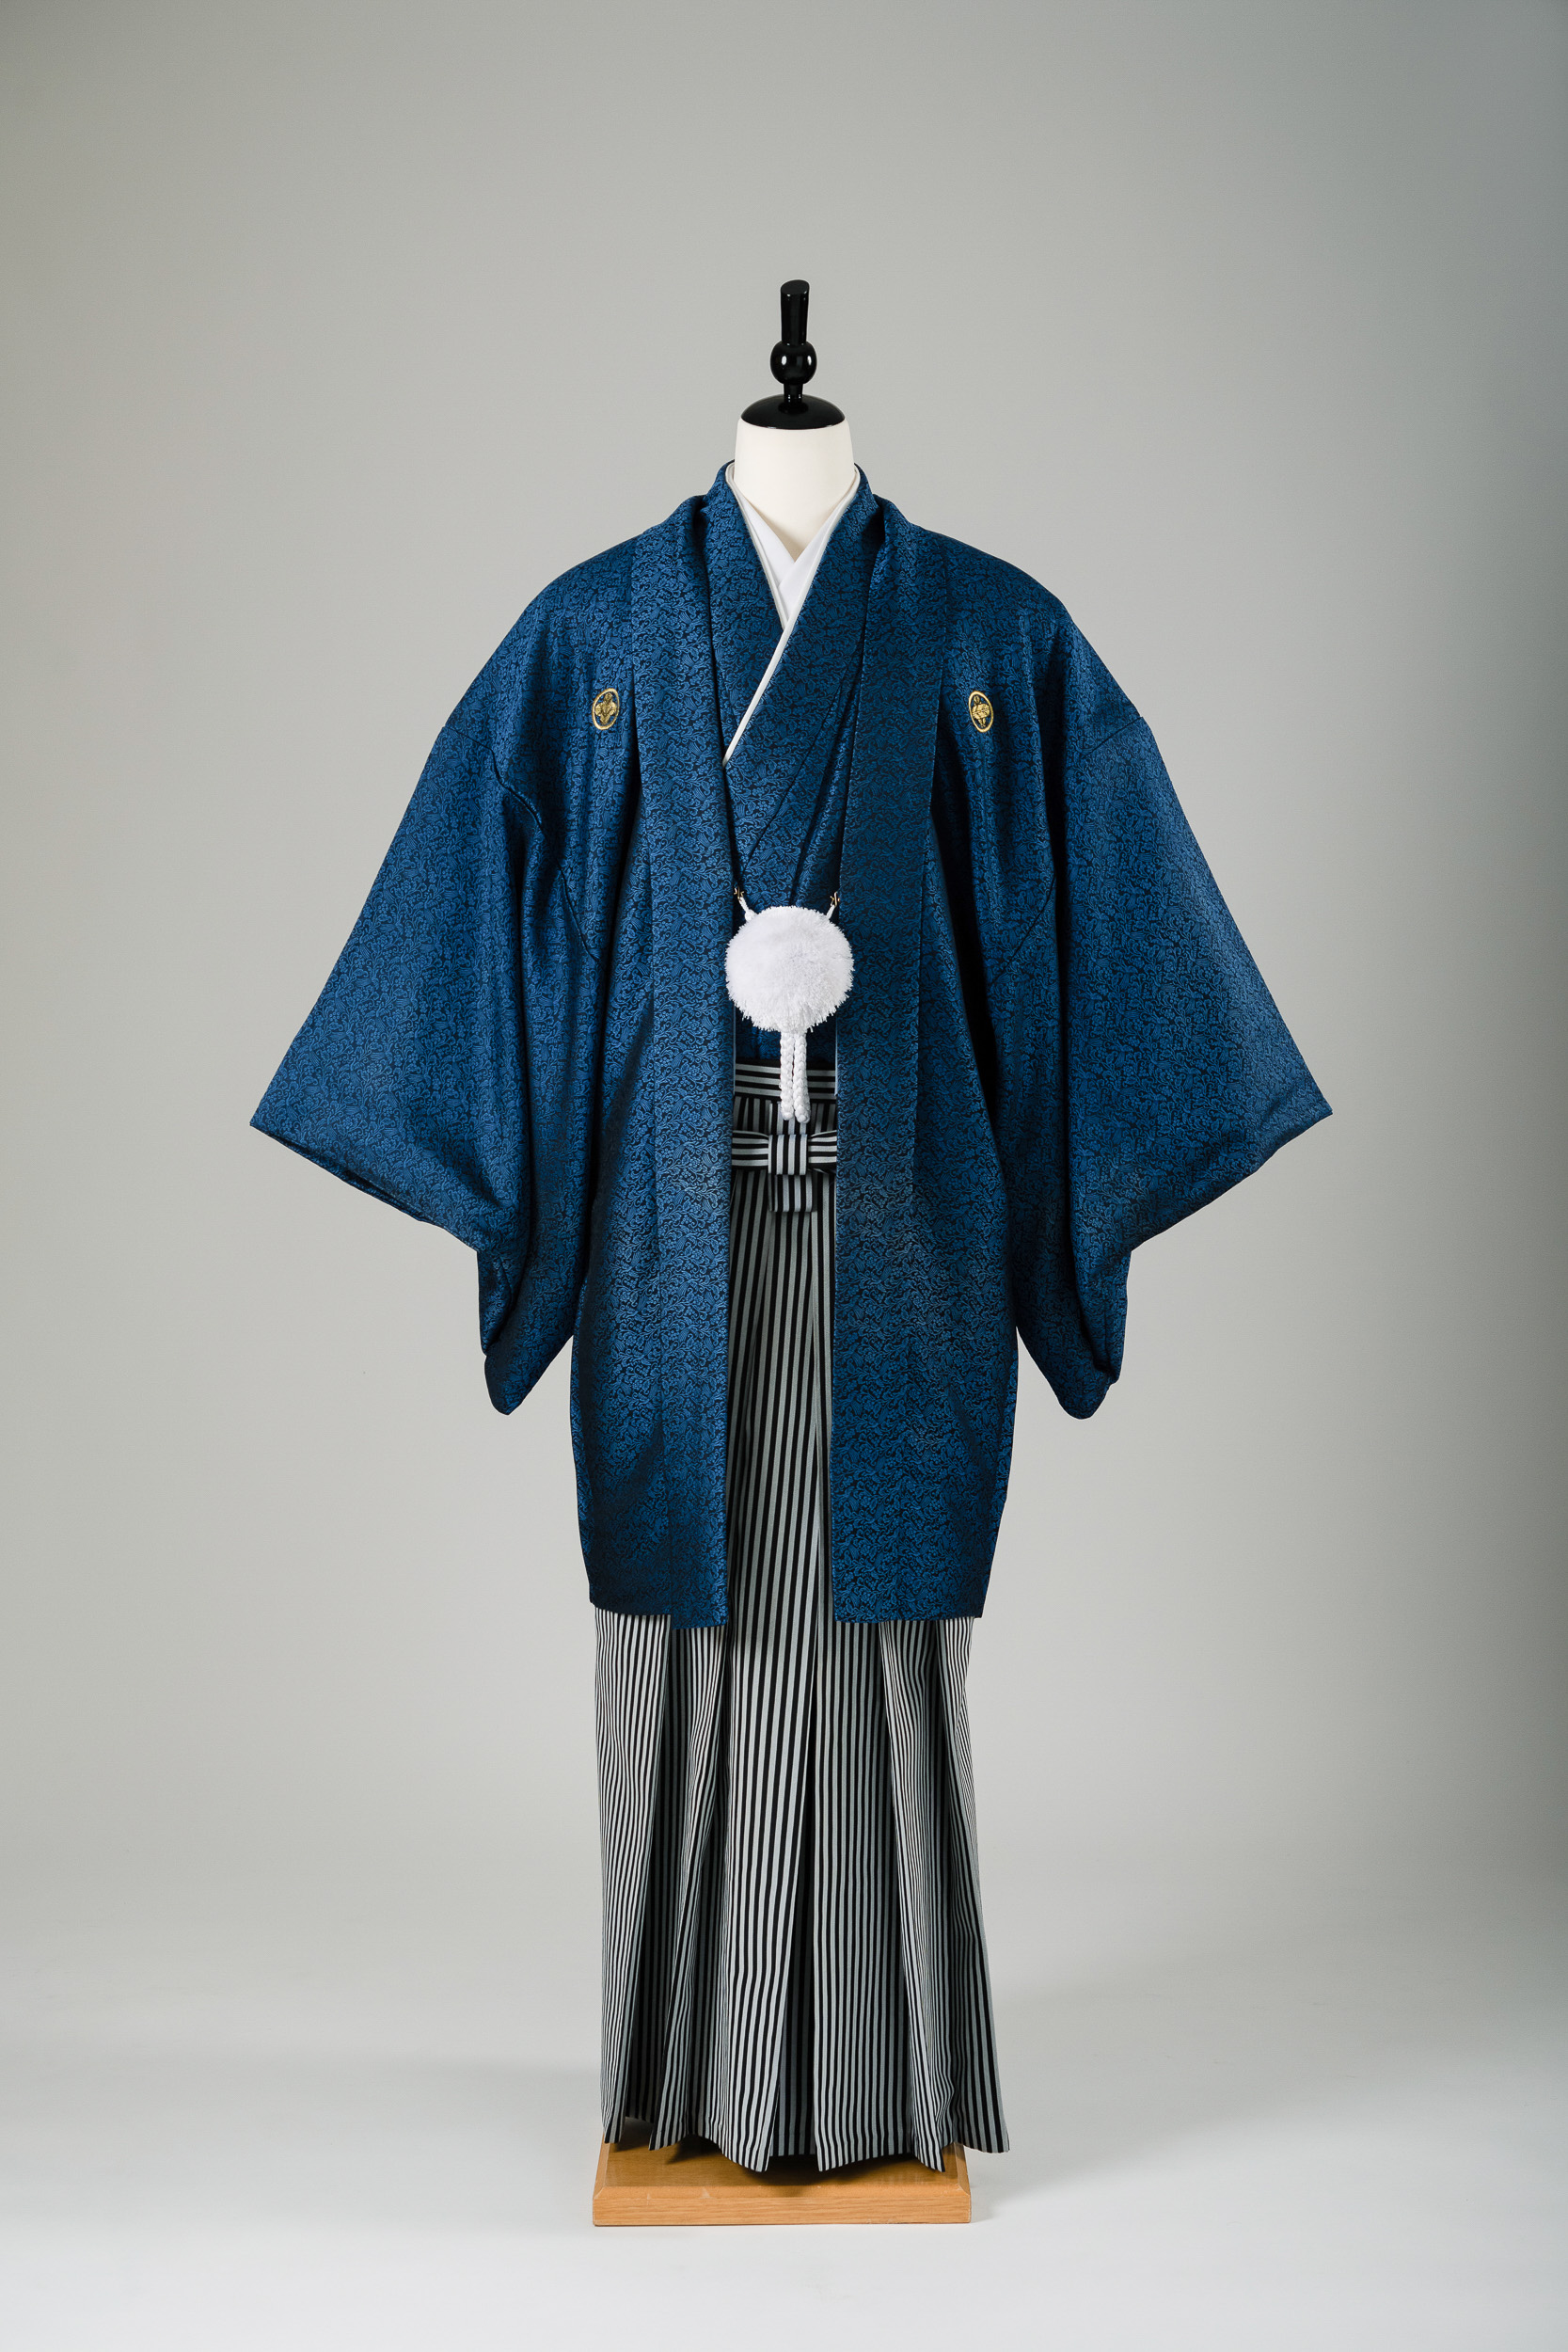 男性衣装の青色の紋付袴レンタル】M/L/LLサイズ・男の第一礼装、結婚式